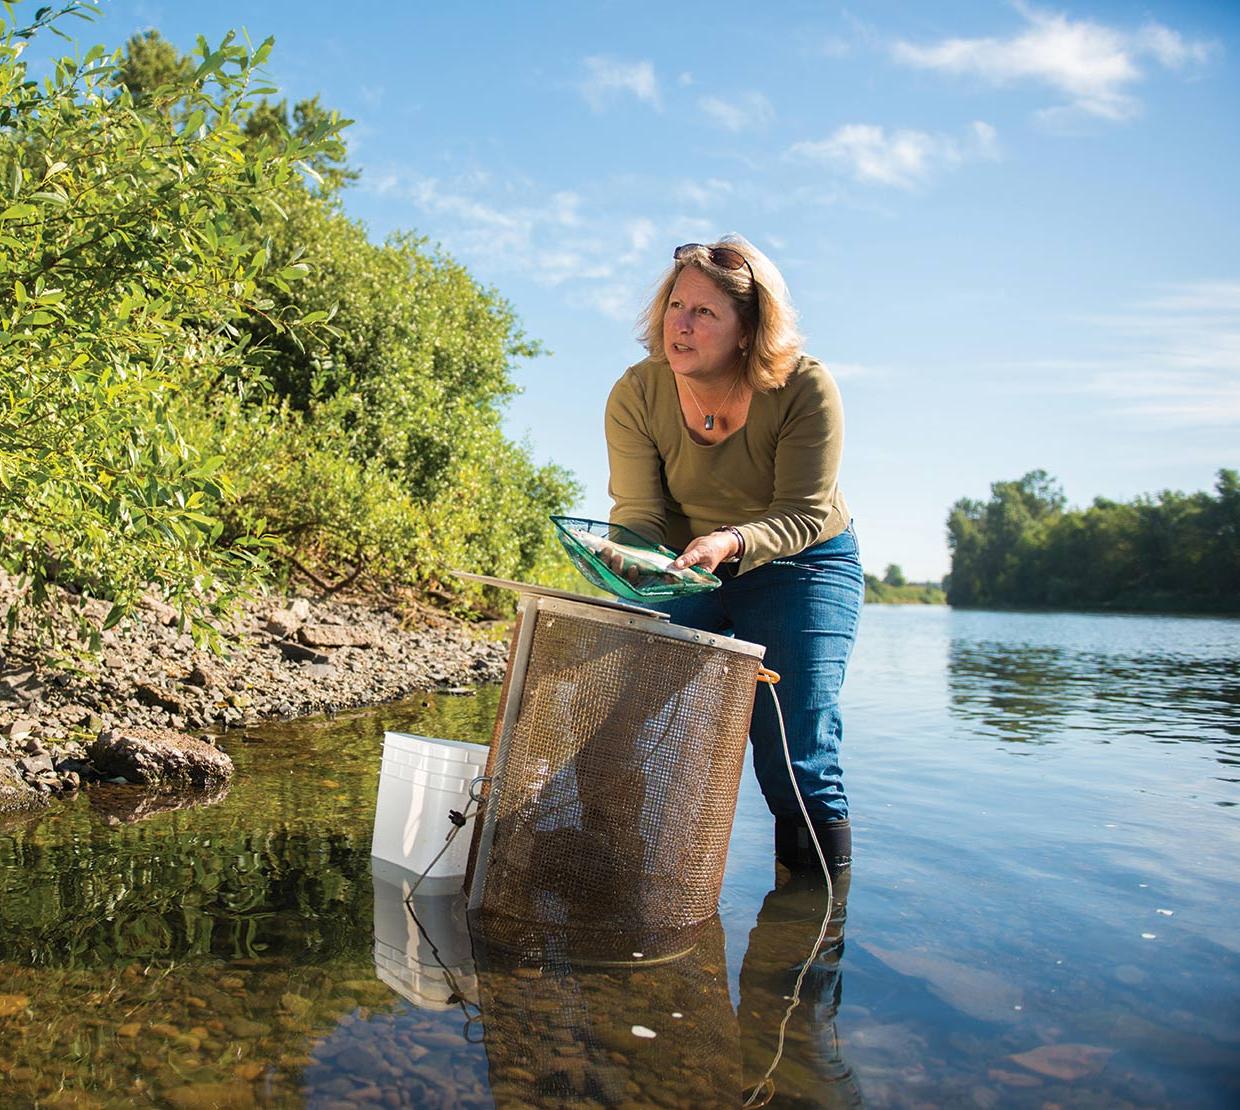 Jerri Bartholomew receiving samples in river